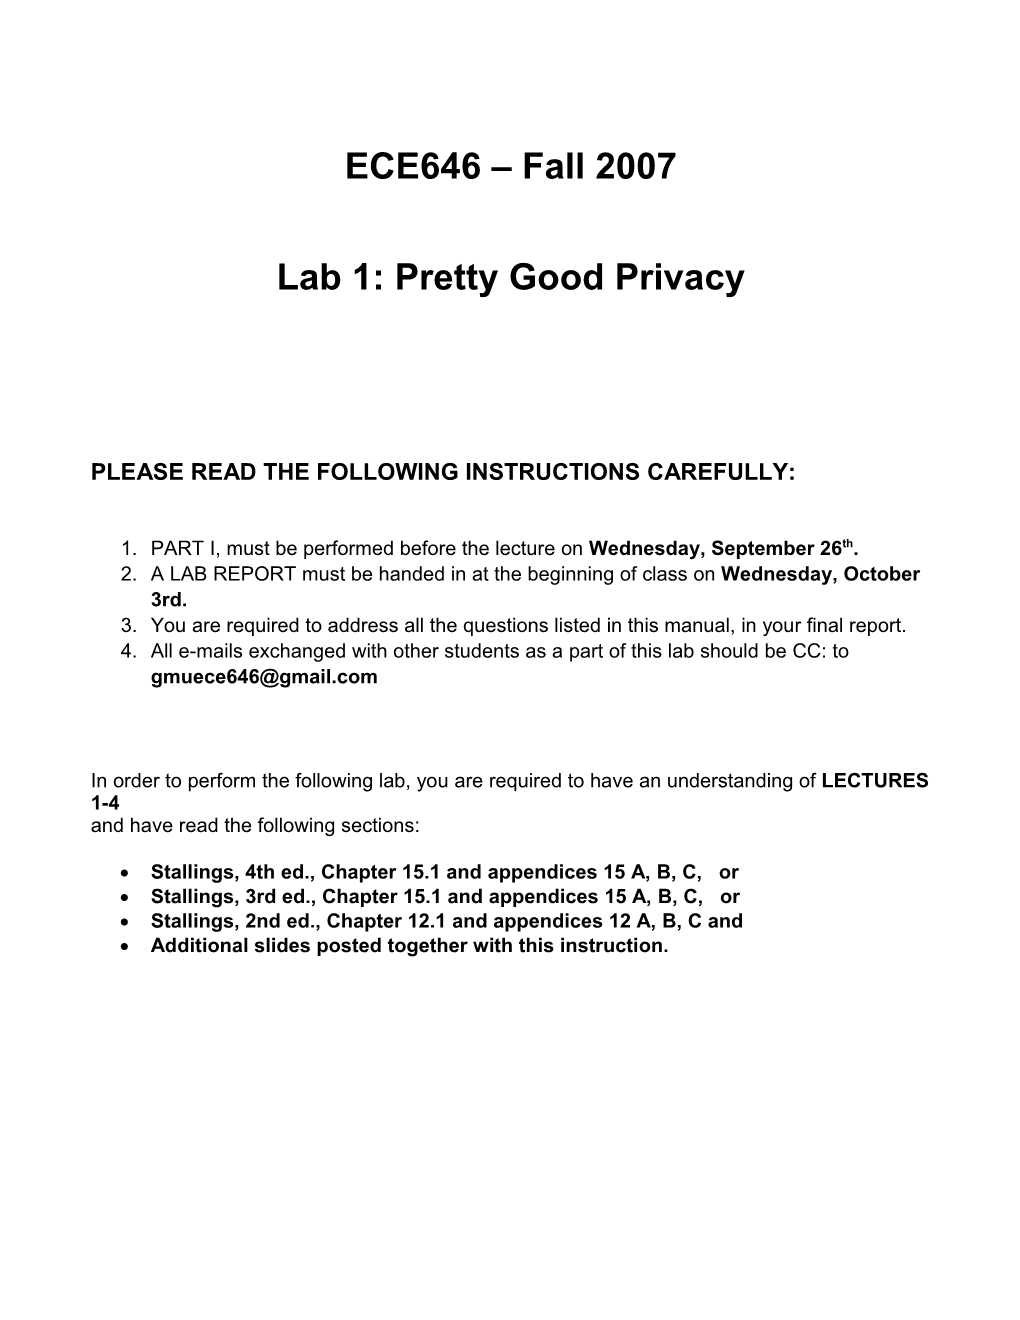 ECE646 – Fall 2007 Lab 1: Pretty Good Privacy